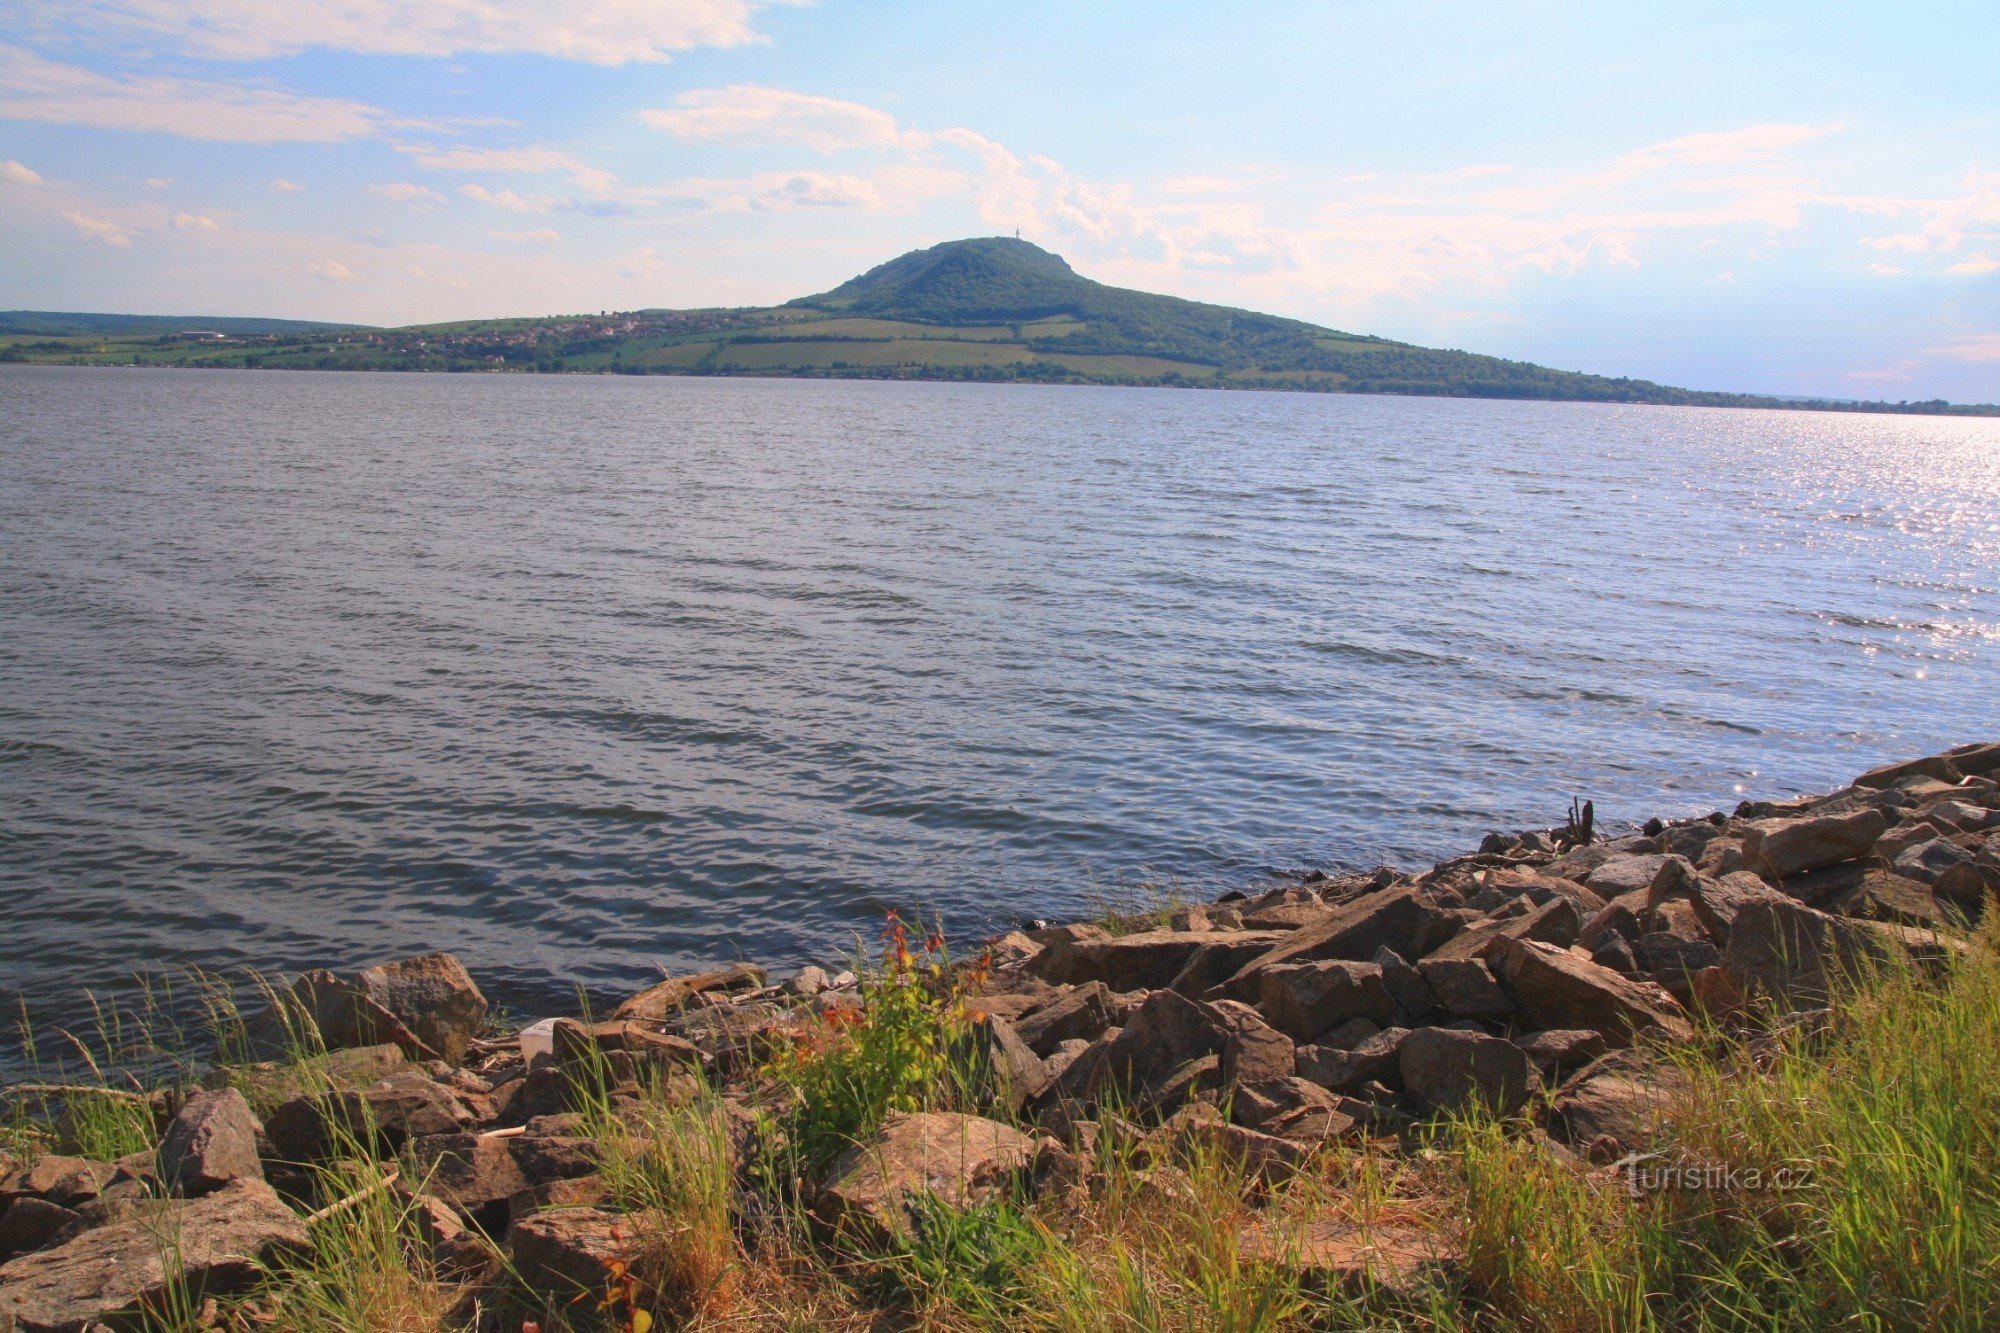 Op de dijk opent zich een zicht op het uitgestrekte oppervlak van het Novomlýnská-stuwmeer met de top van de Pálava